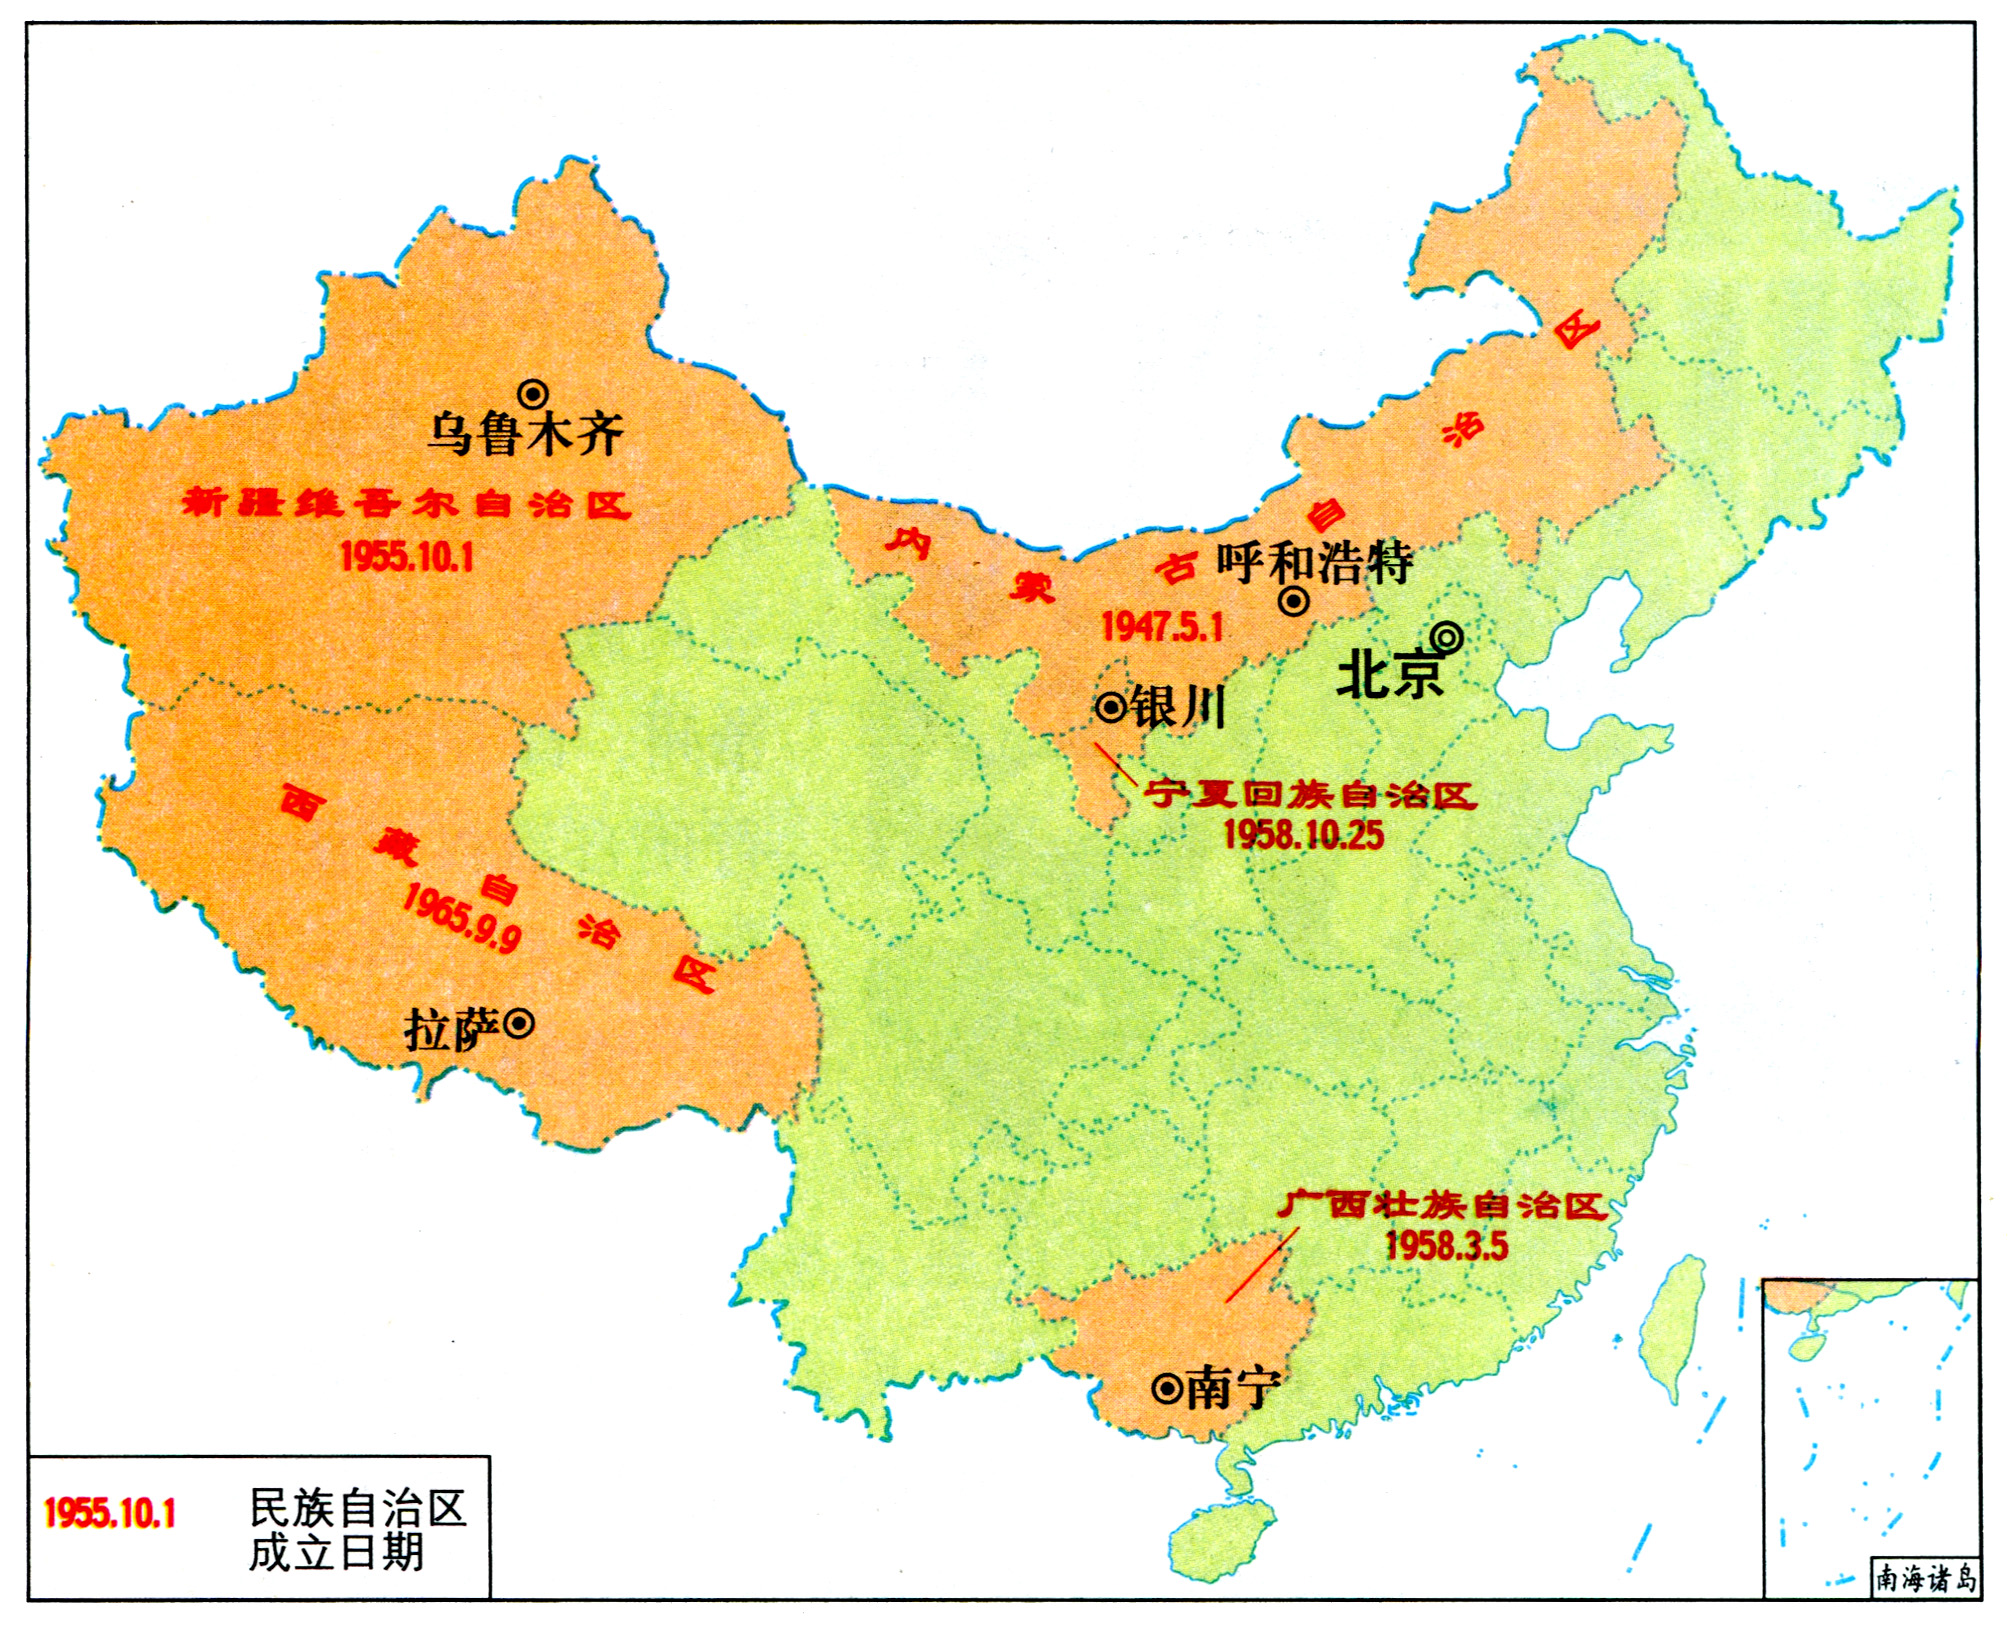 青海省共有几个民族自治州，青海下辖2市6个自治州解析？